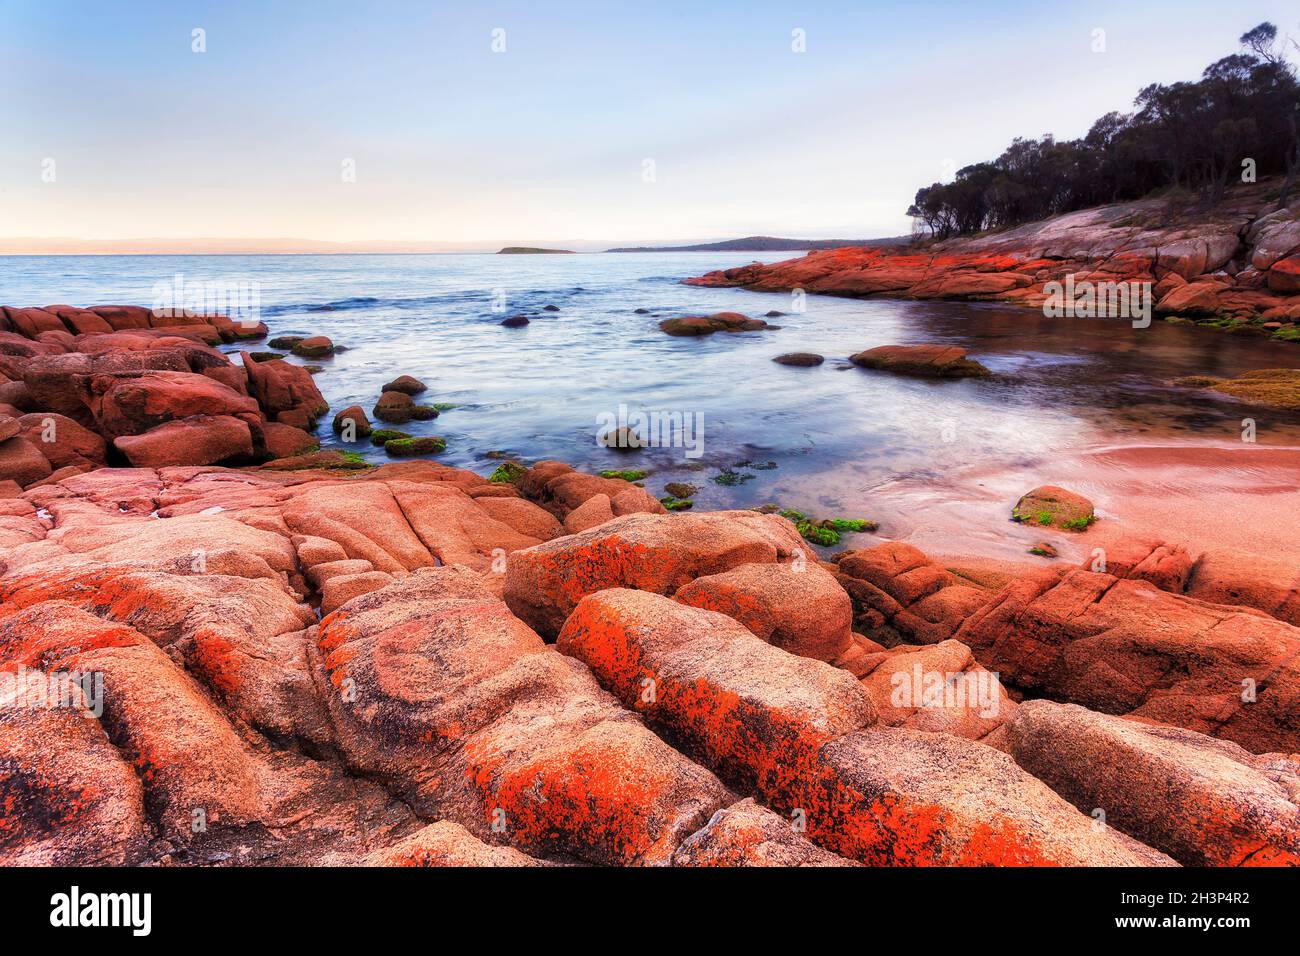 Piccola spiaggia di sabbia rossa sulla baia di Coles della costa orientale in Tasmania all'alba - scoscese rocce di granito rosso dipinte da lichen. Foto Stock